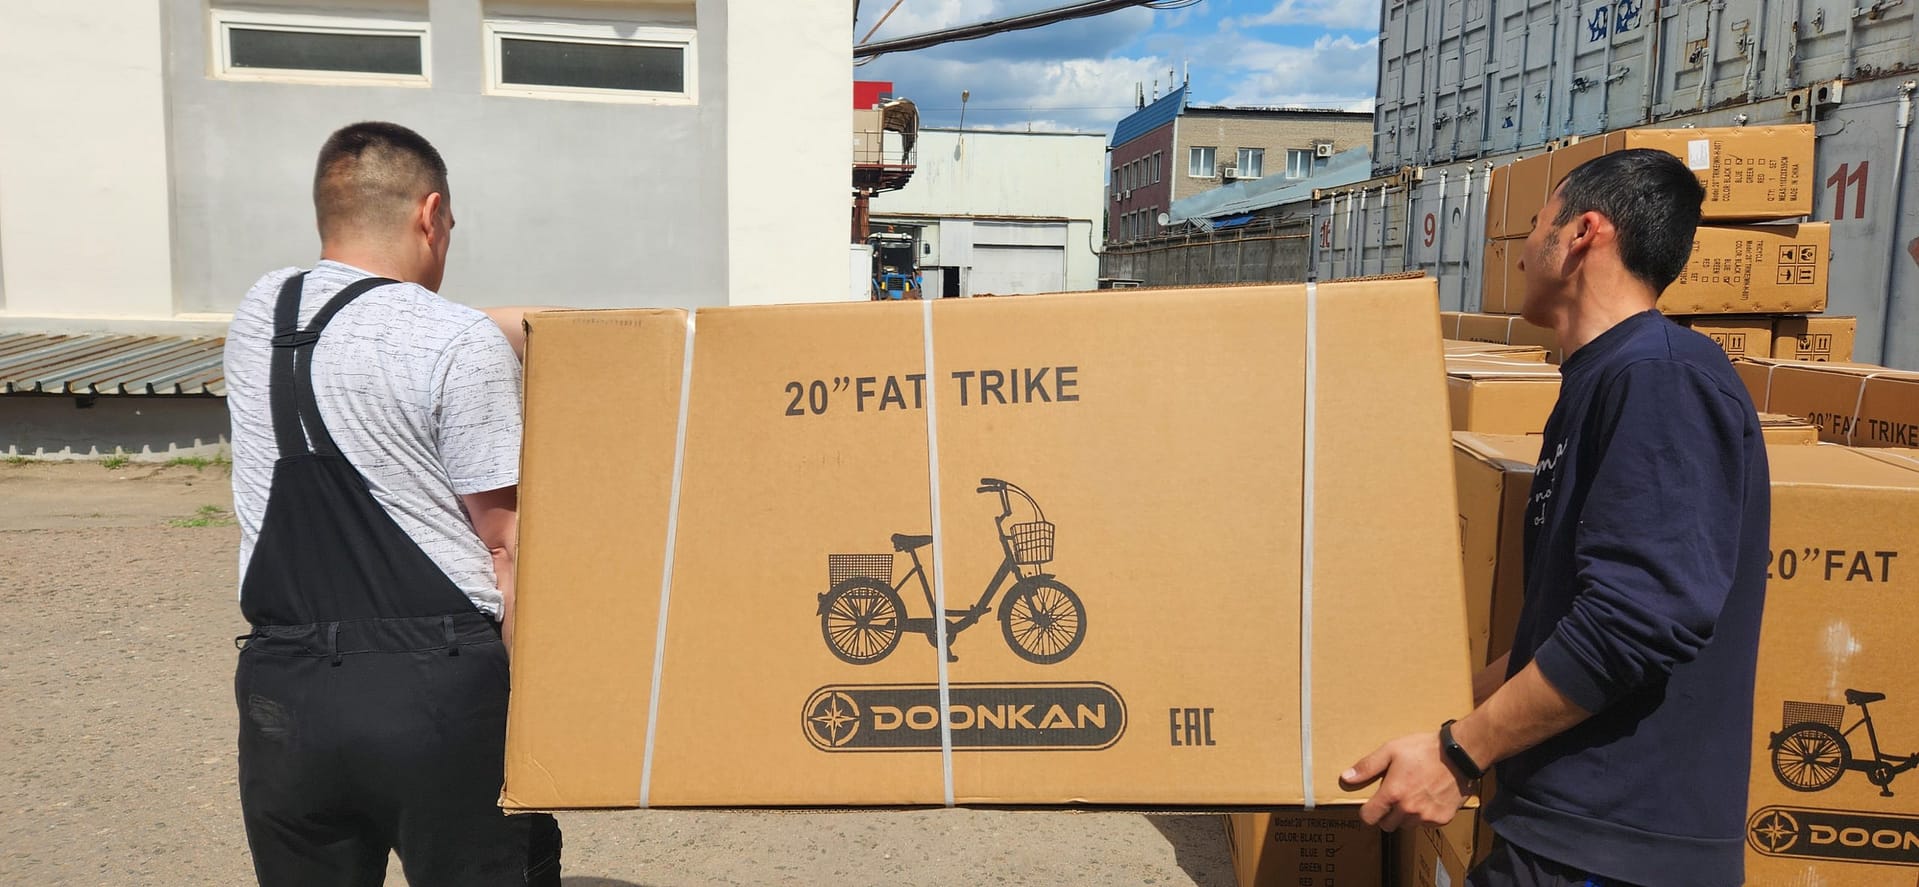 трехколесный велосипед фэтбайк для взрослого Doonkan Trike Panda Fatbike доставка